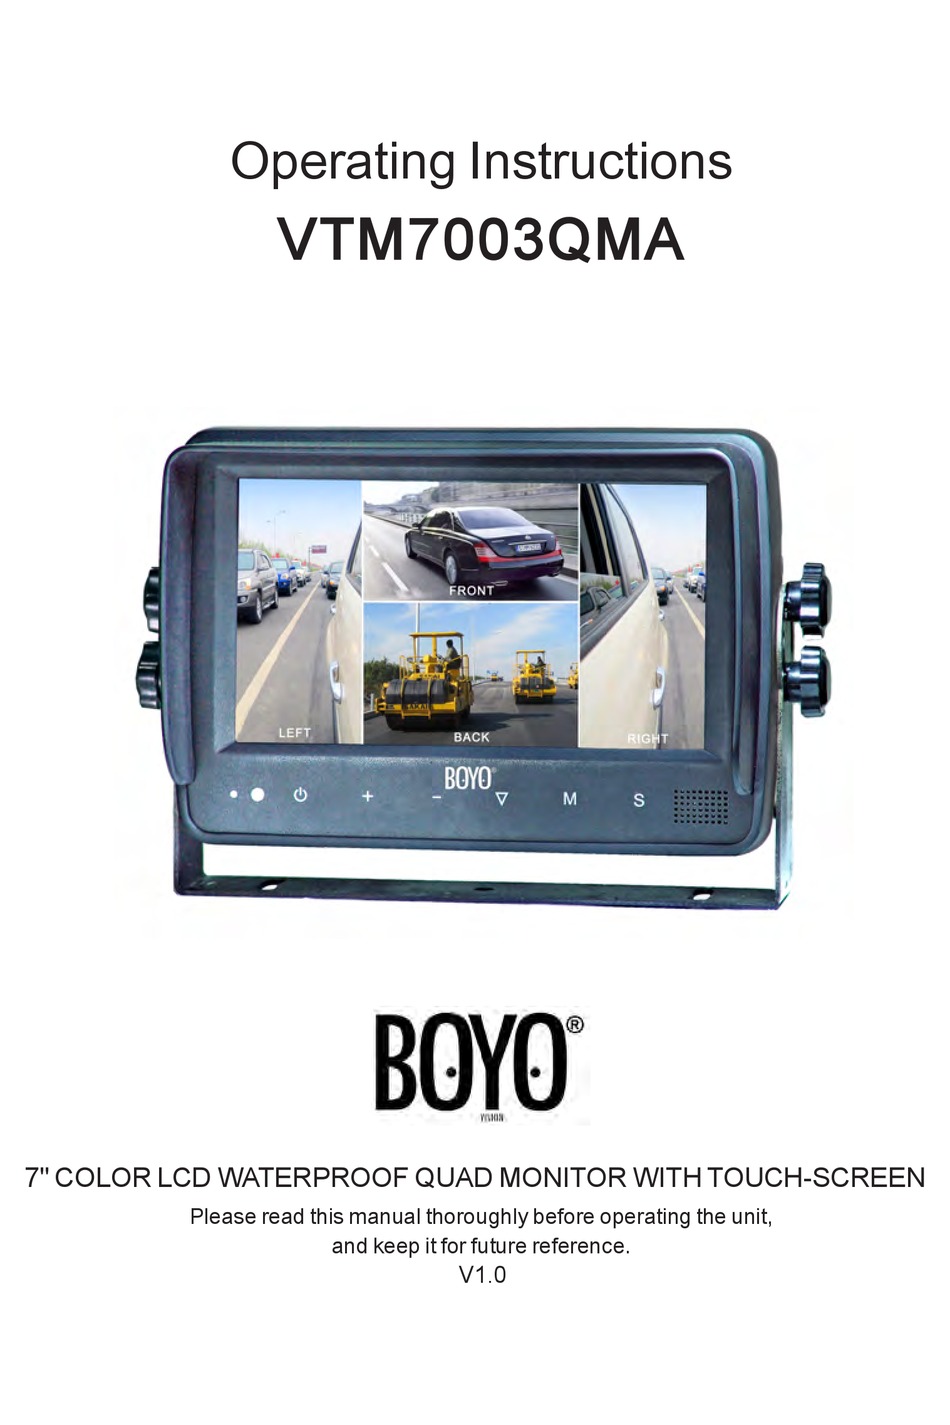 BOYO VTM7003QMA OPERATING INSTRUCTIONS MANUAL Pdf Download